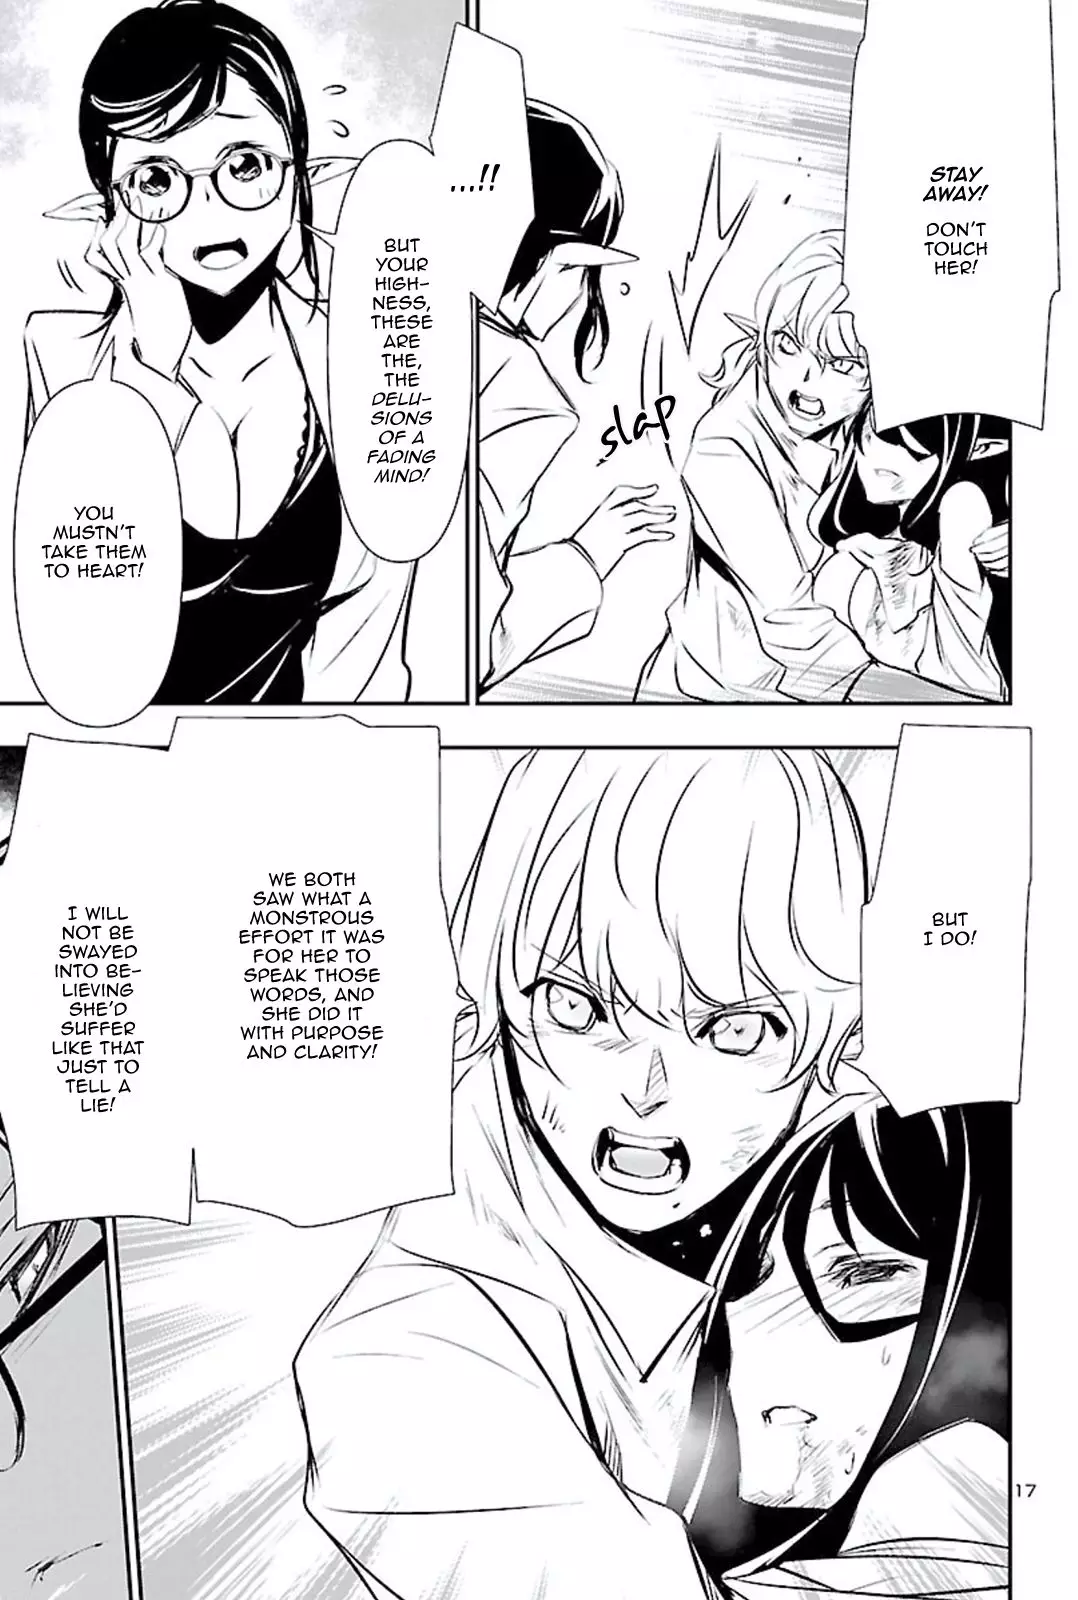 Shinju no Nectar - 46 page 17